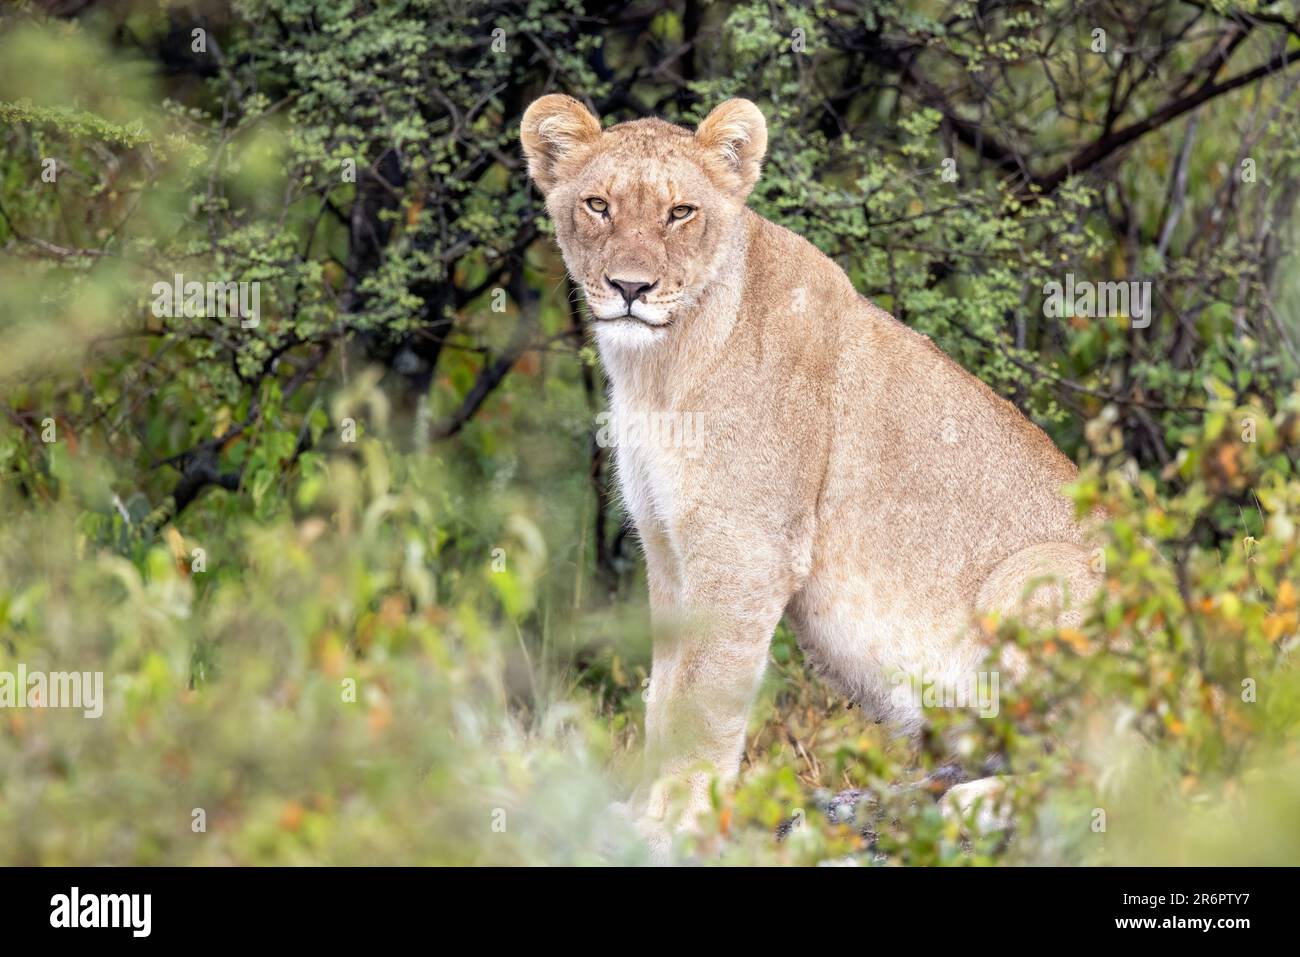 Lion sous-adulte (Panthera leo) - Onguma Game Reserve, Namibie, Afrique Banque D'Images